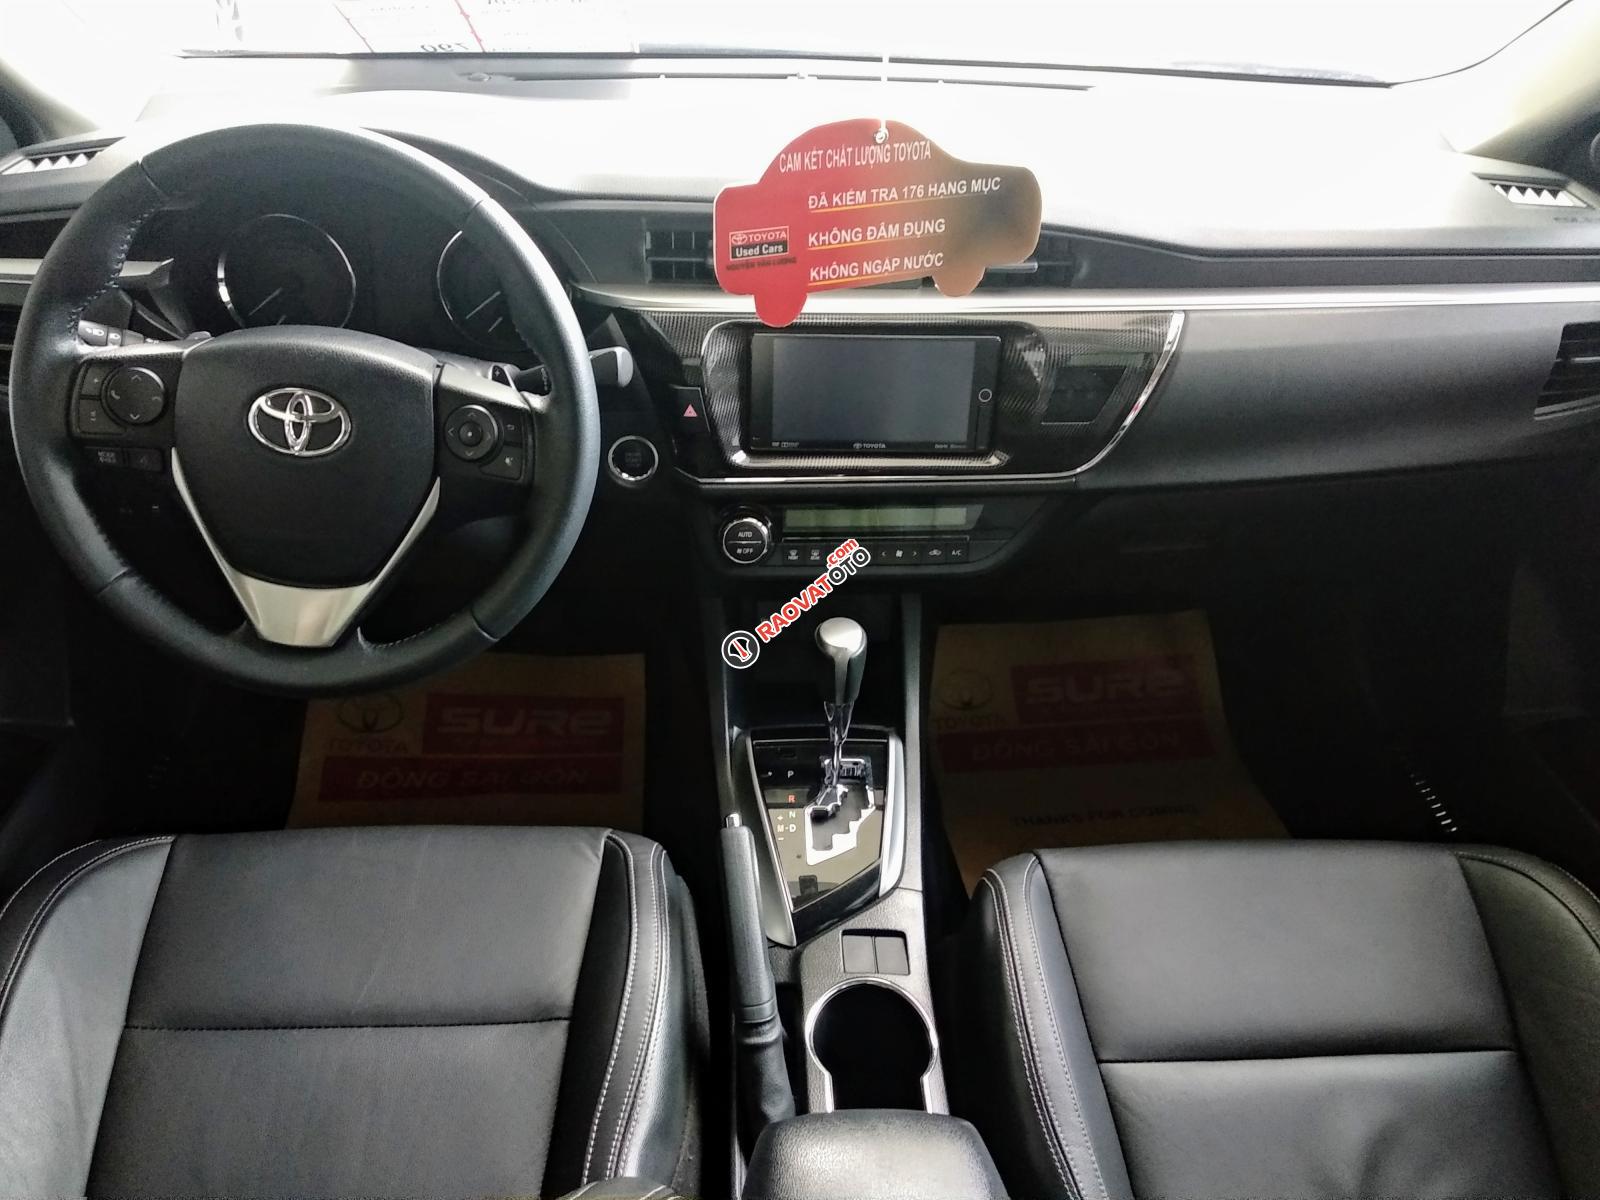 Bán Toyota Corolla Altis 2.0V đời 2016, màu đen, ưu đãi giá tốt hơn cho khách nào đến xem xe trực tiếp-6